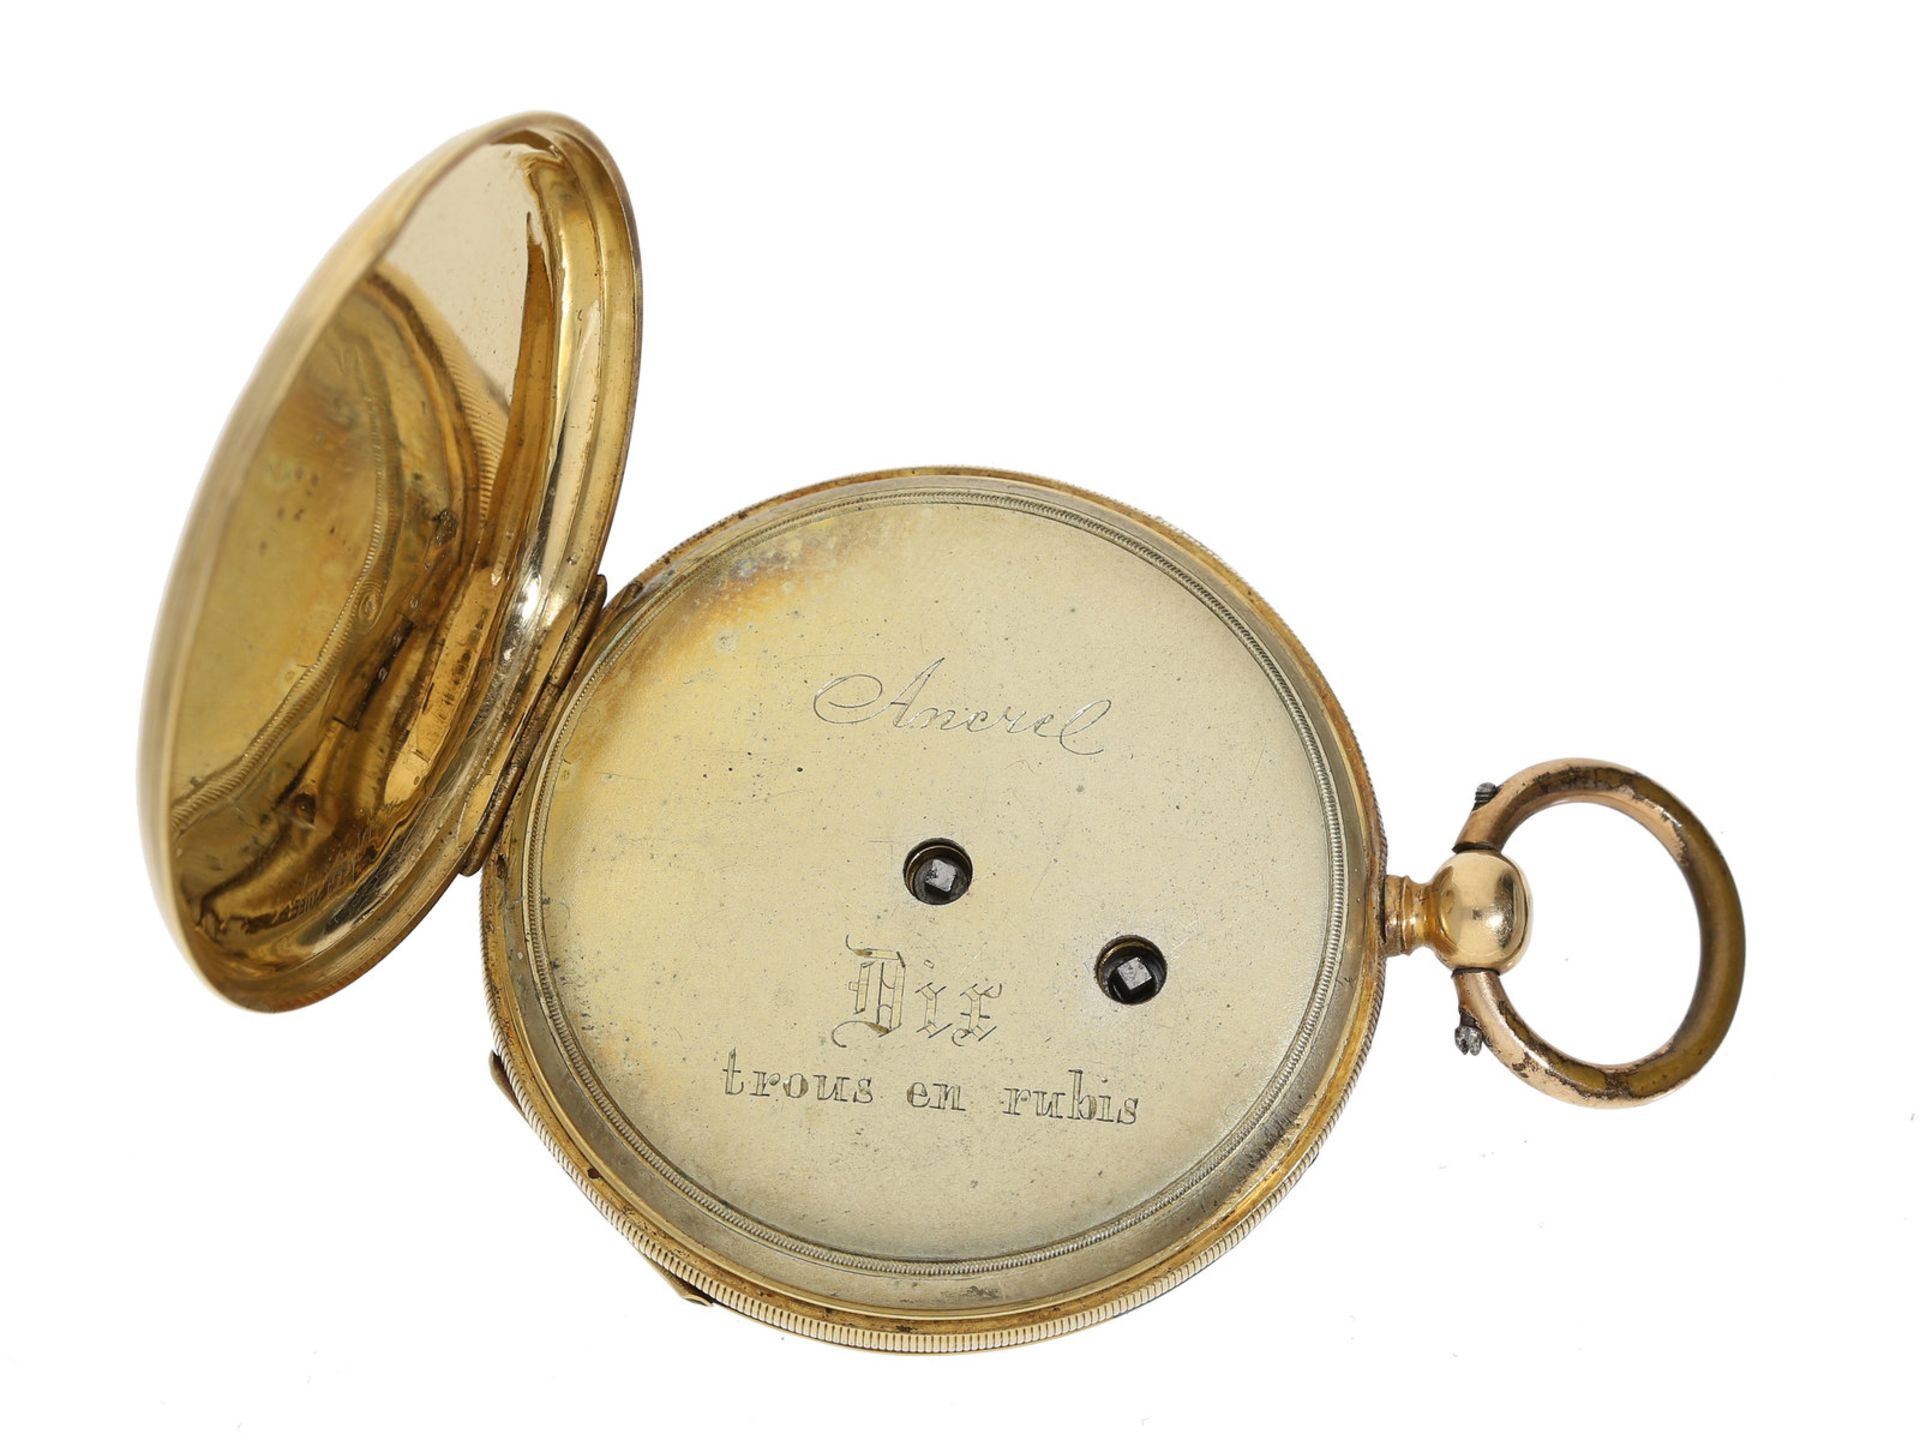 Taschenuhr: sehr schöne 18K Goldlepine mit graviertem Zifferblatt, maritimes Motiv, frühes Anke - Bild 2 aus 3